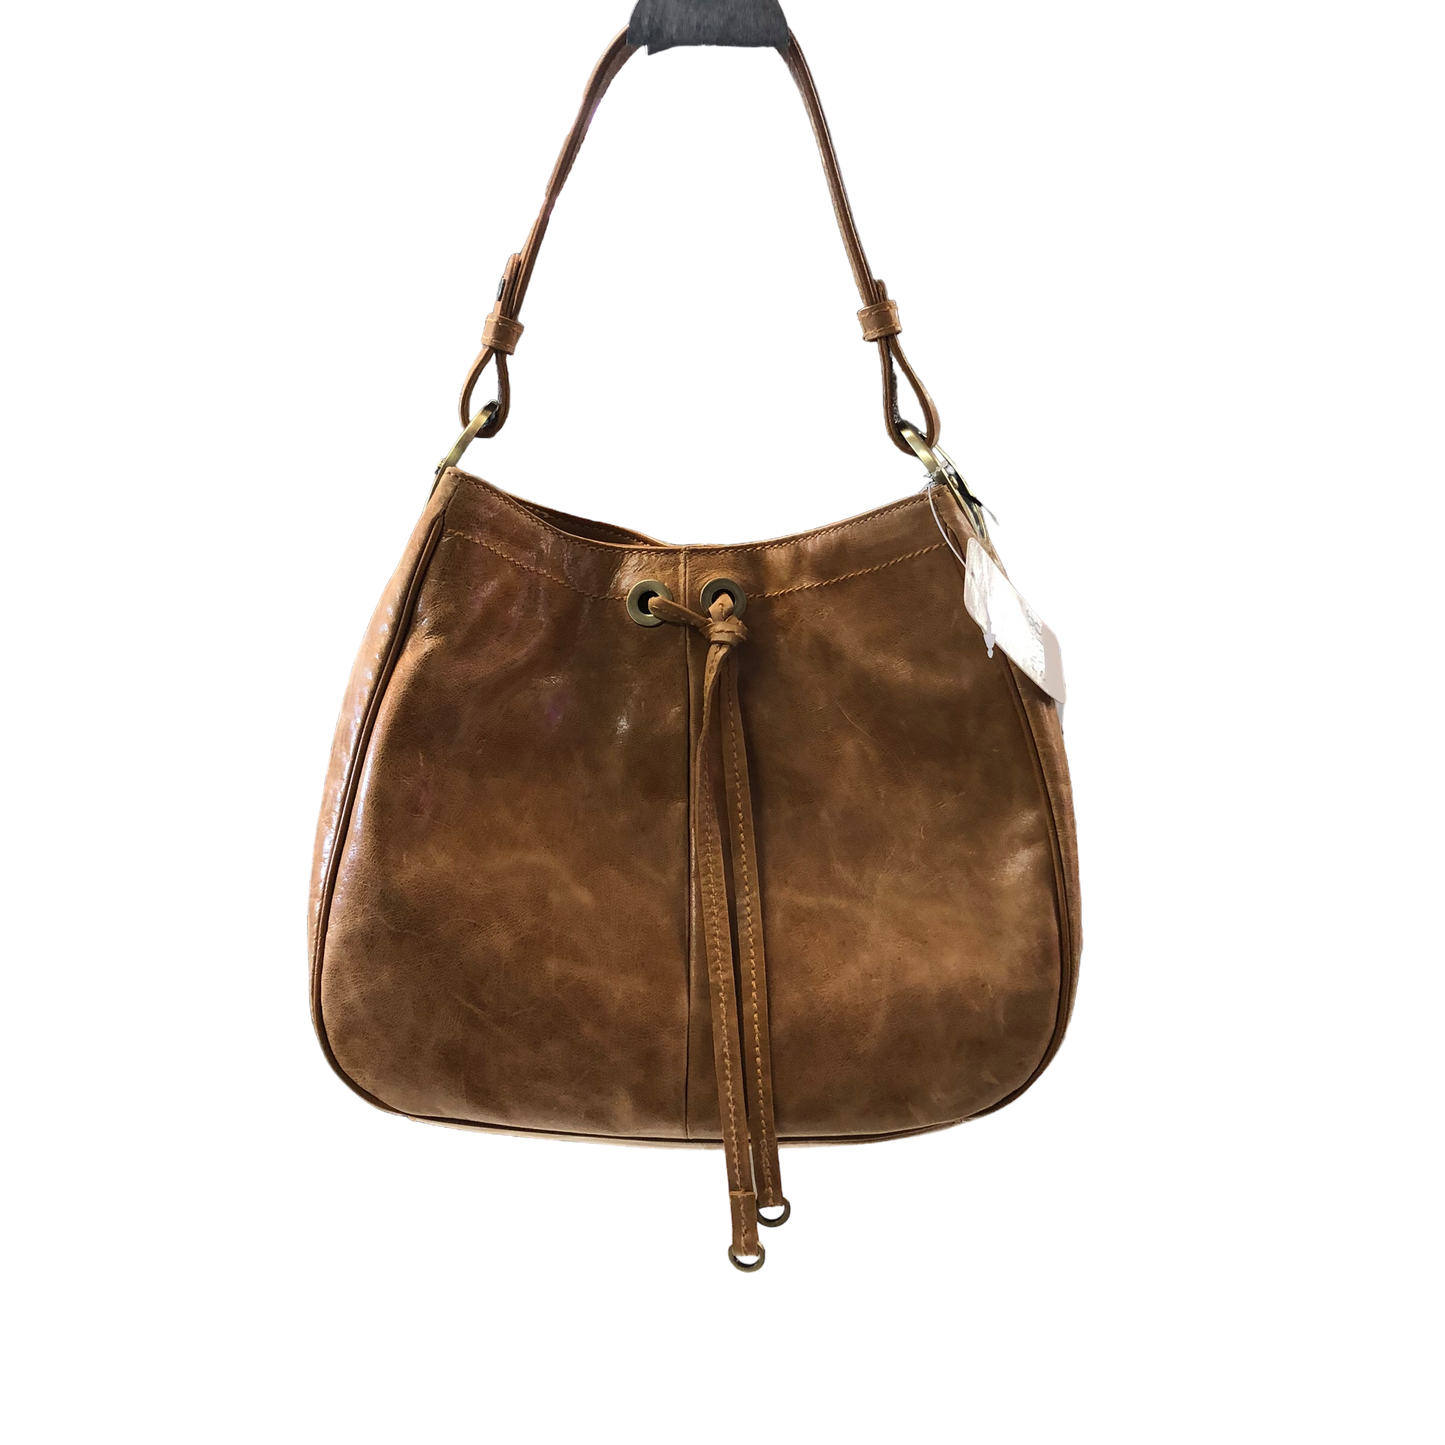 Handbag Franco Sarto, Size Medium